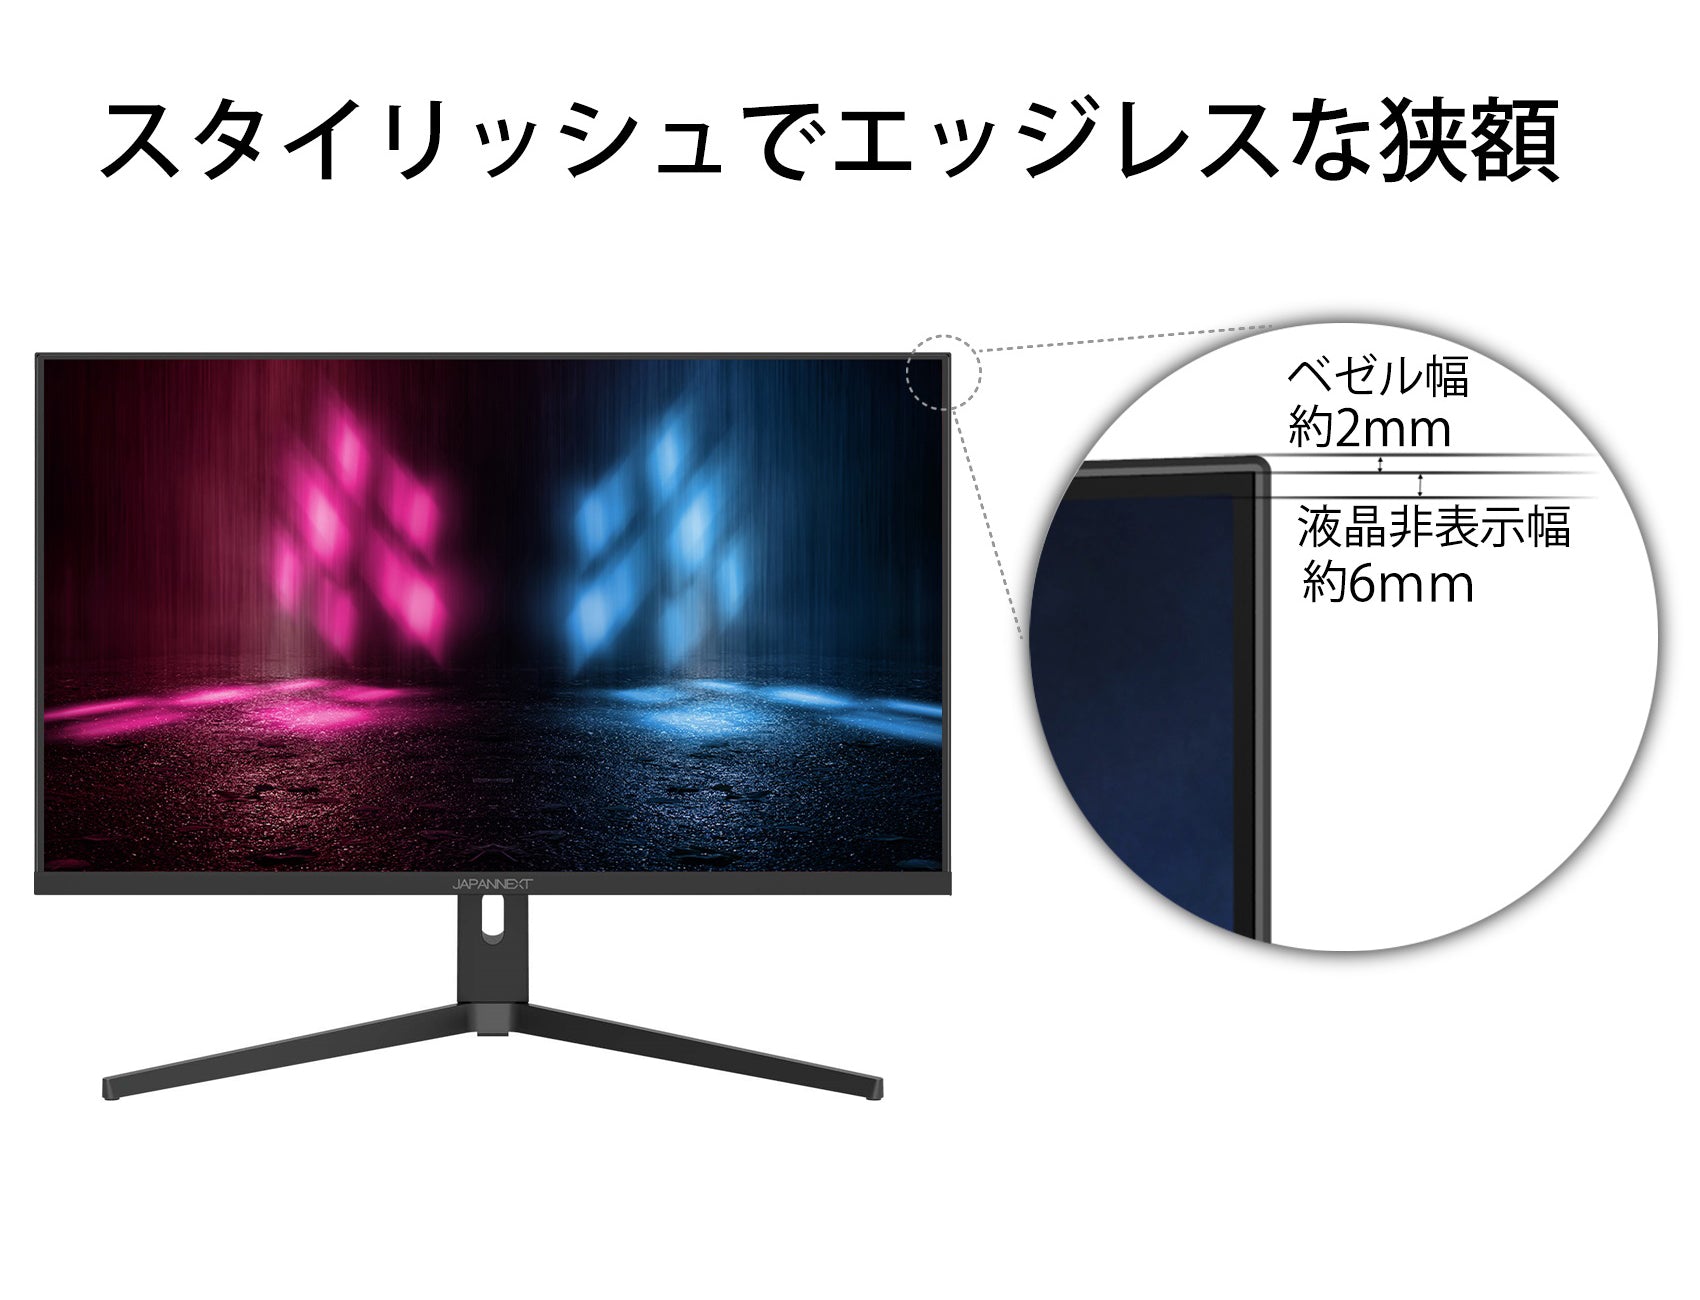 購入 品 ブログ JAPANNEXT HDMI 2.1対応 31.5型 144Hz対応４Kゲーミングモニター JN-315IPS144UHDR-N  ディスプレイ